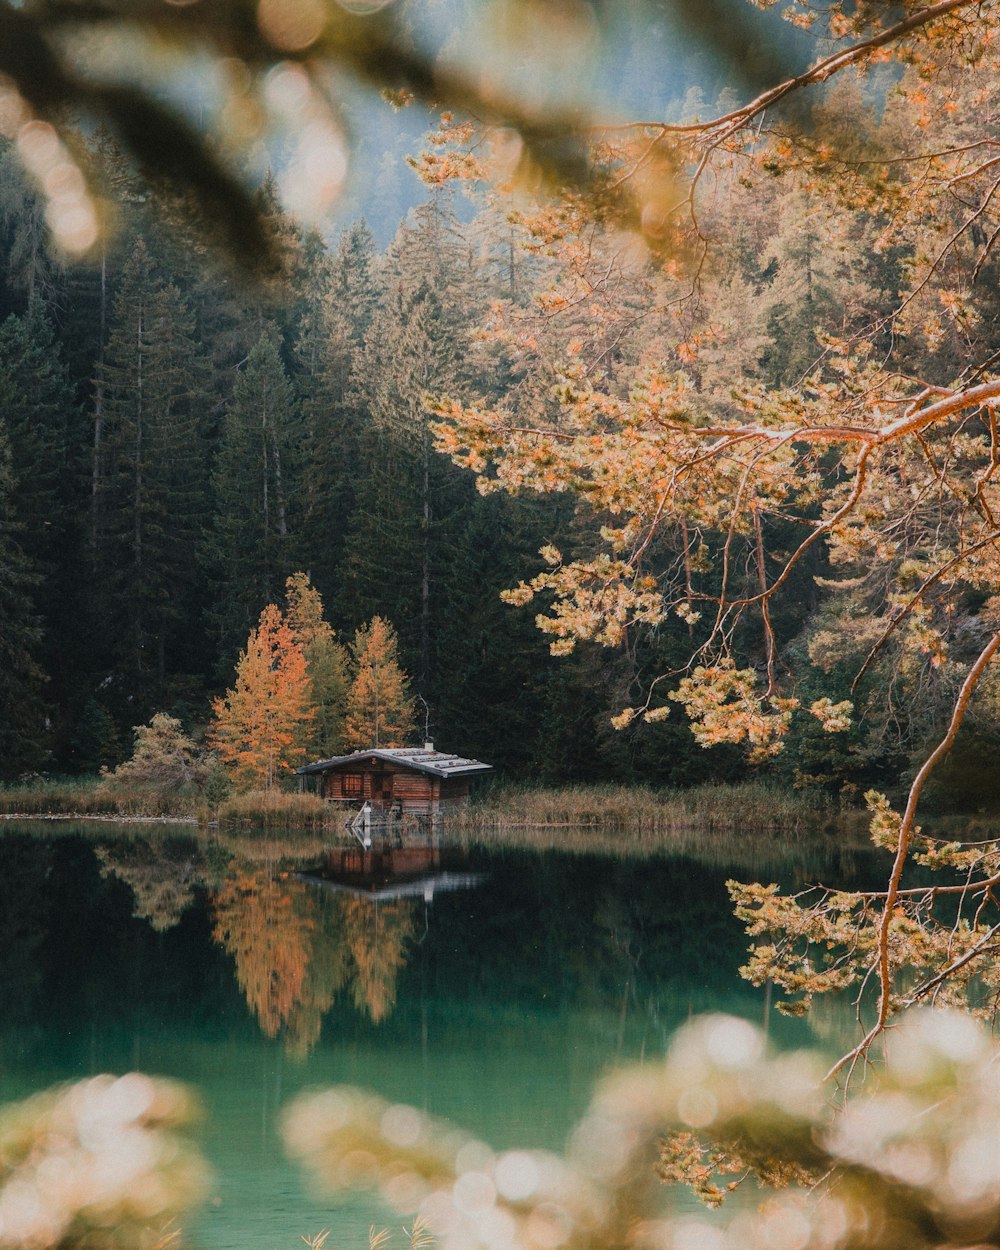 Casa de madera marrón cerca del cuerpo de agua rodeada de árboles verdes